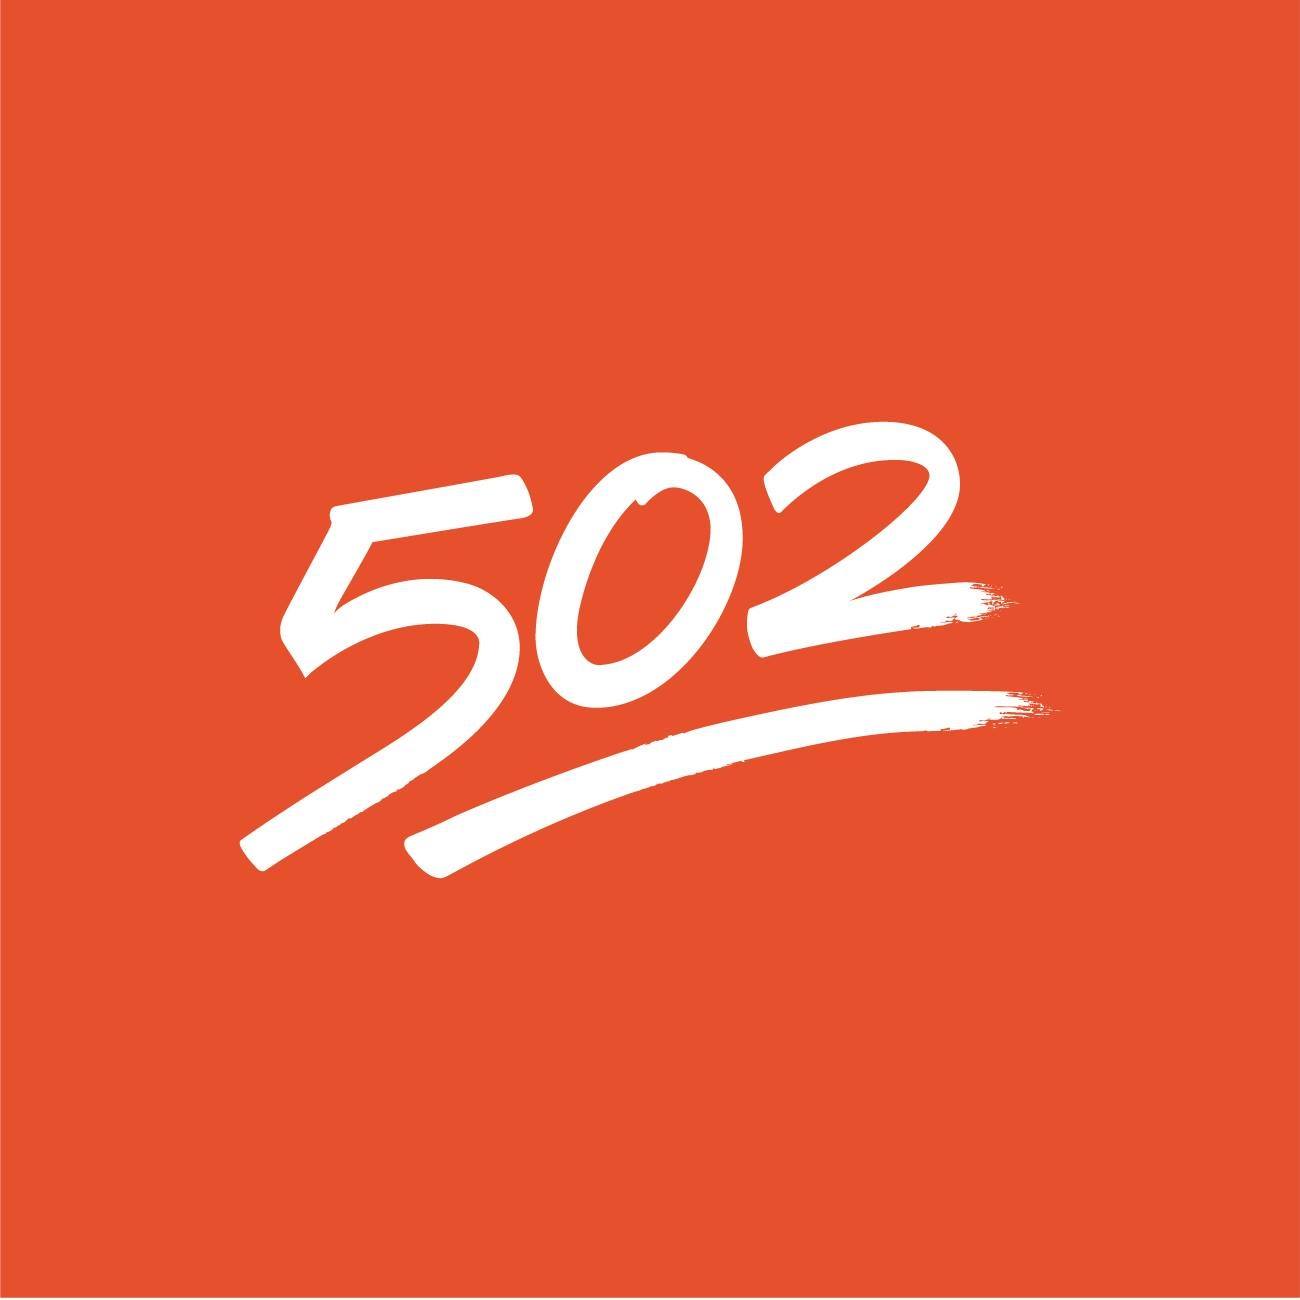 Company logo of 502 - A Strategic Marketing Agency